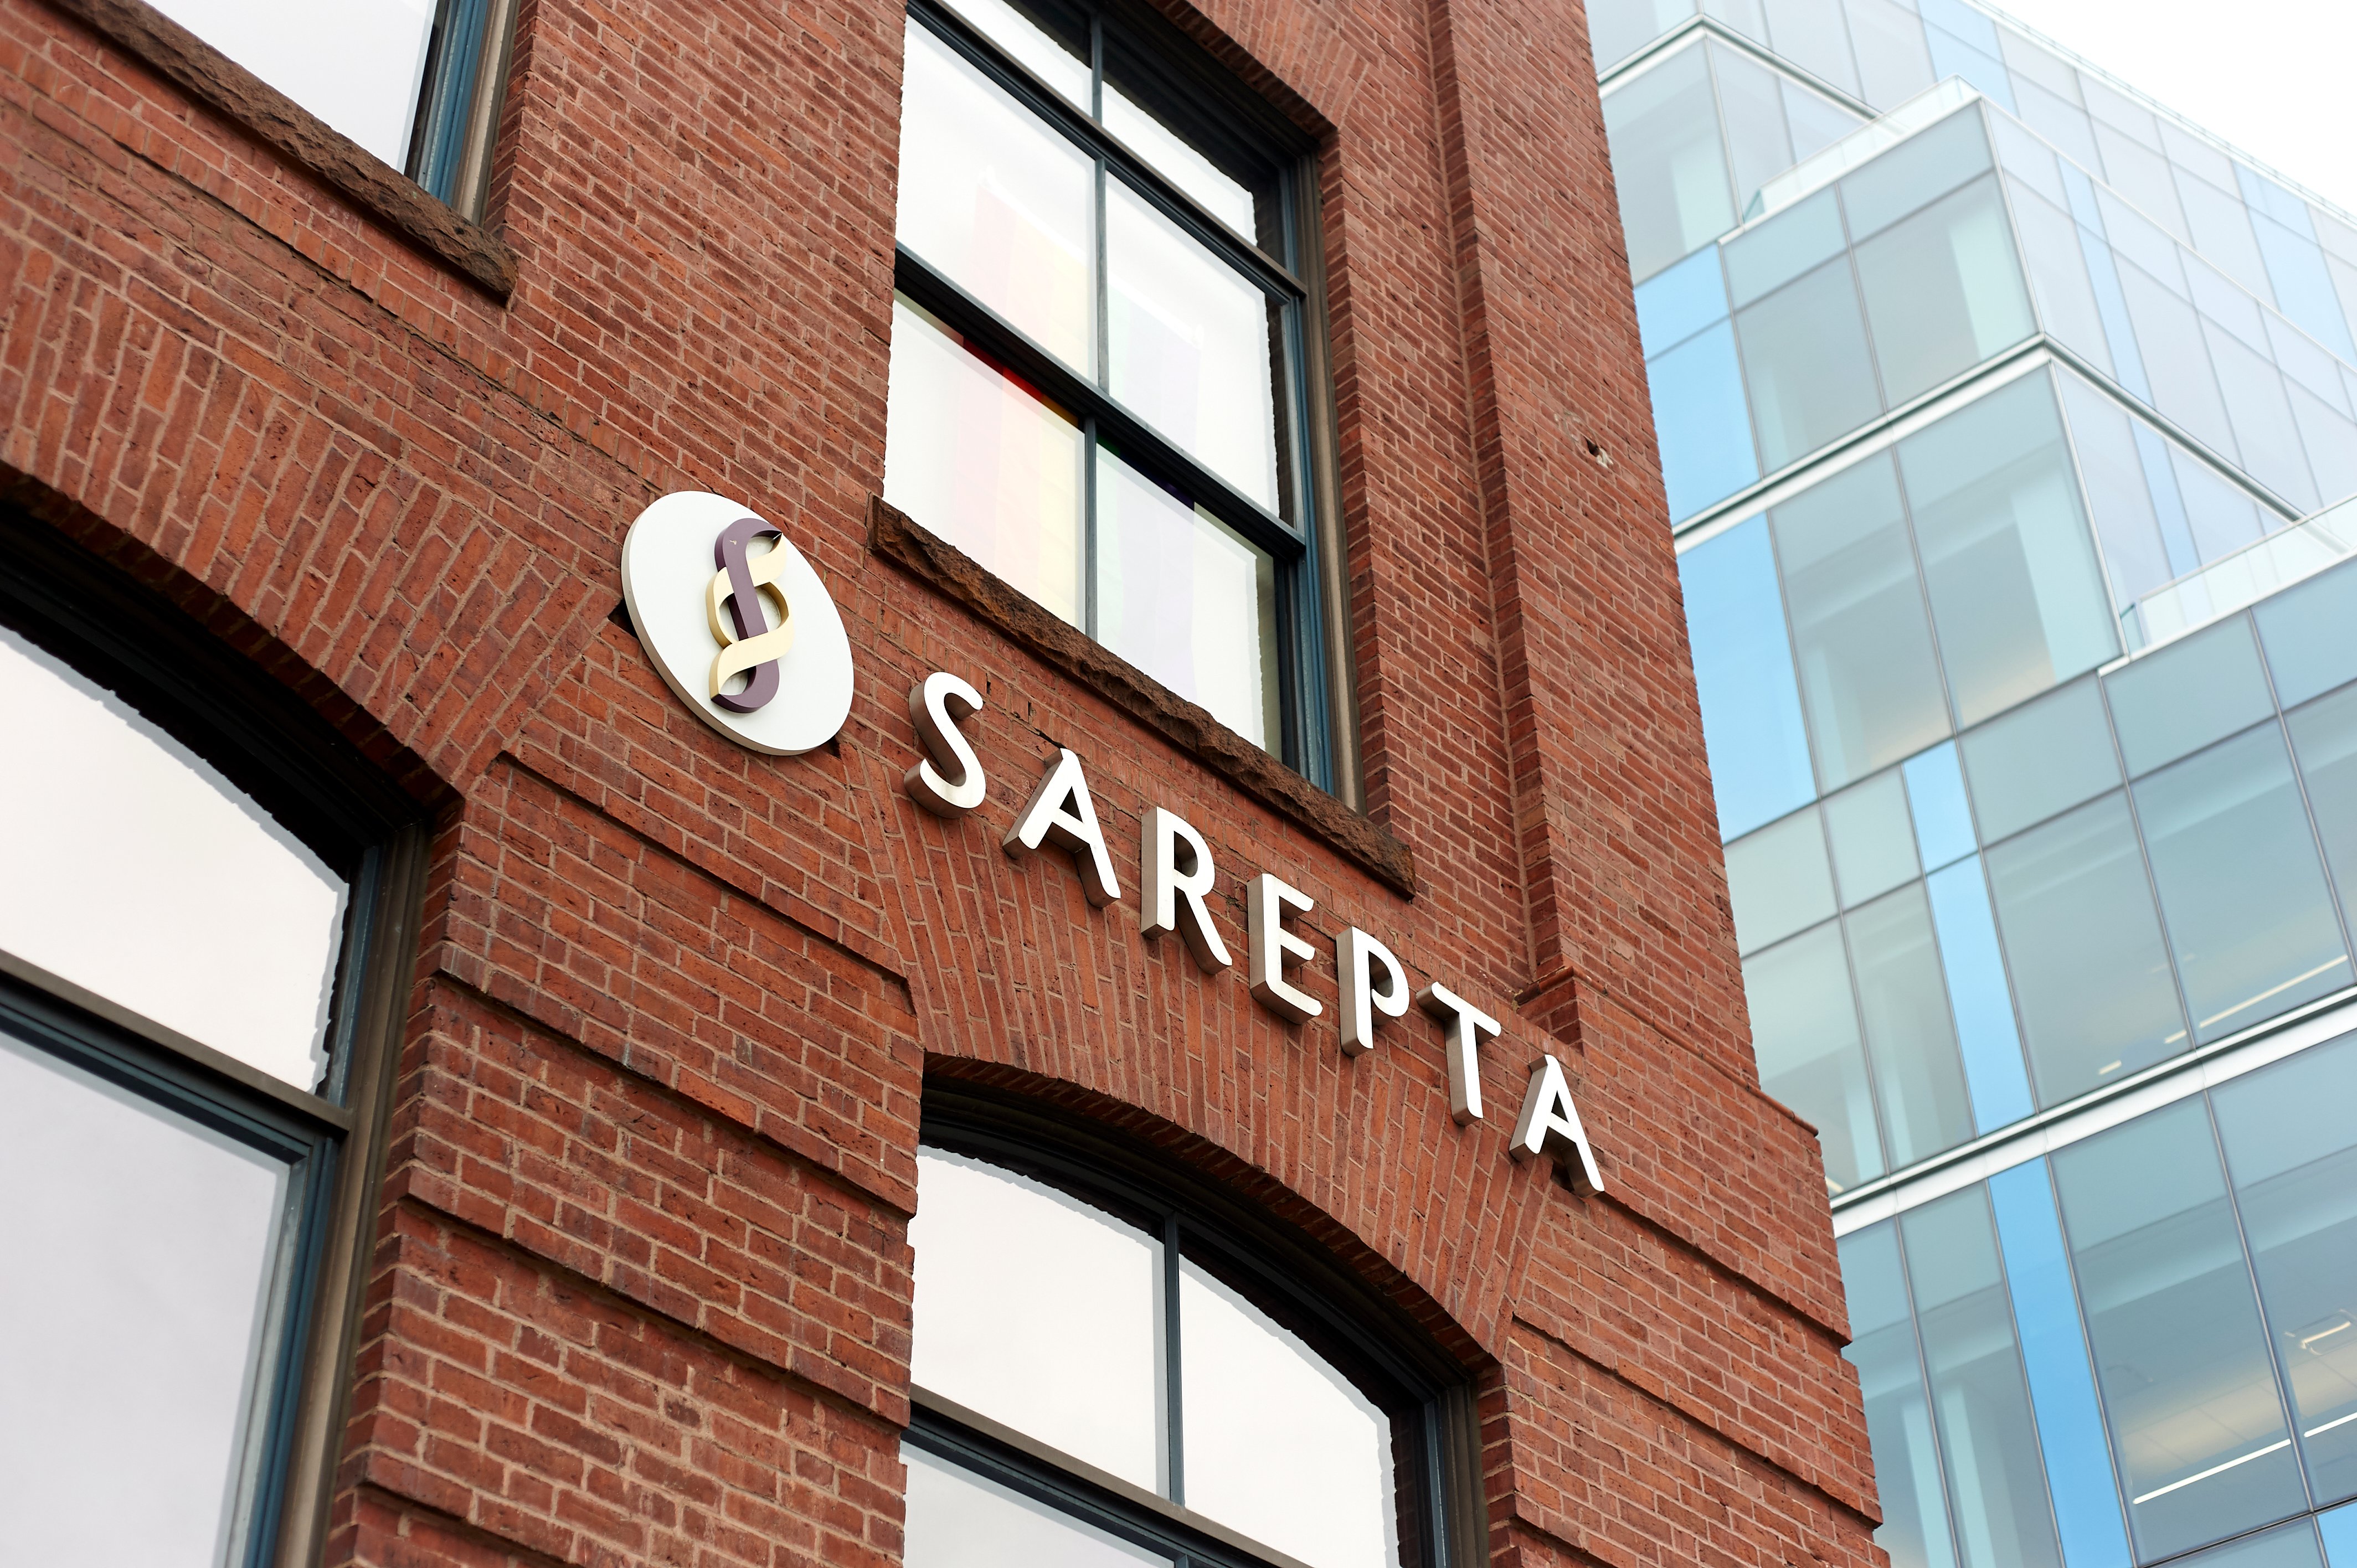 Redbrick building with Sarepta name and logo